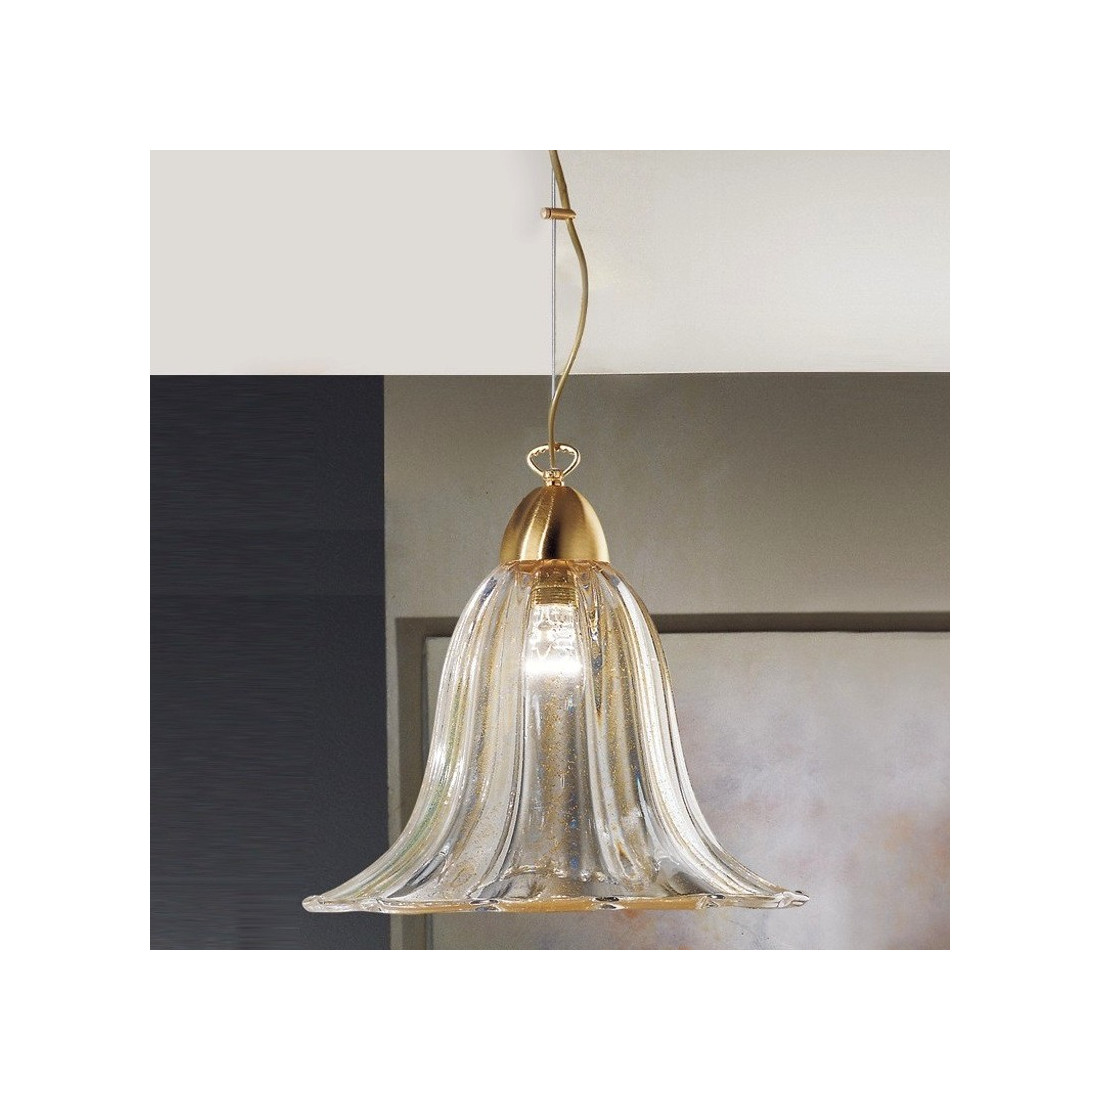 Lampadario DP-2321 E27 53W vetro murano campana classica metallo dorato interno